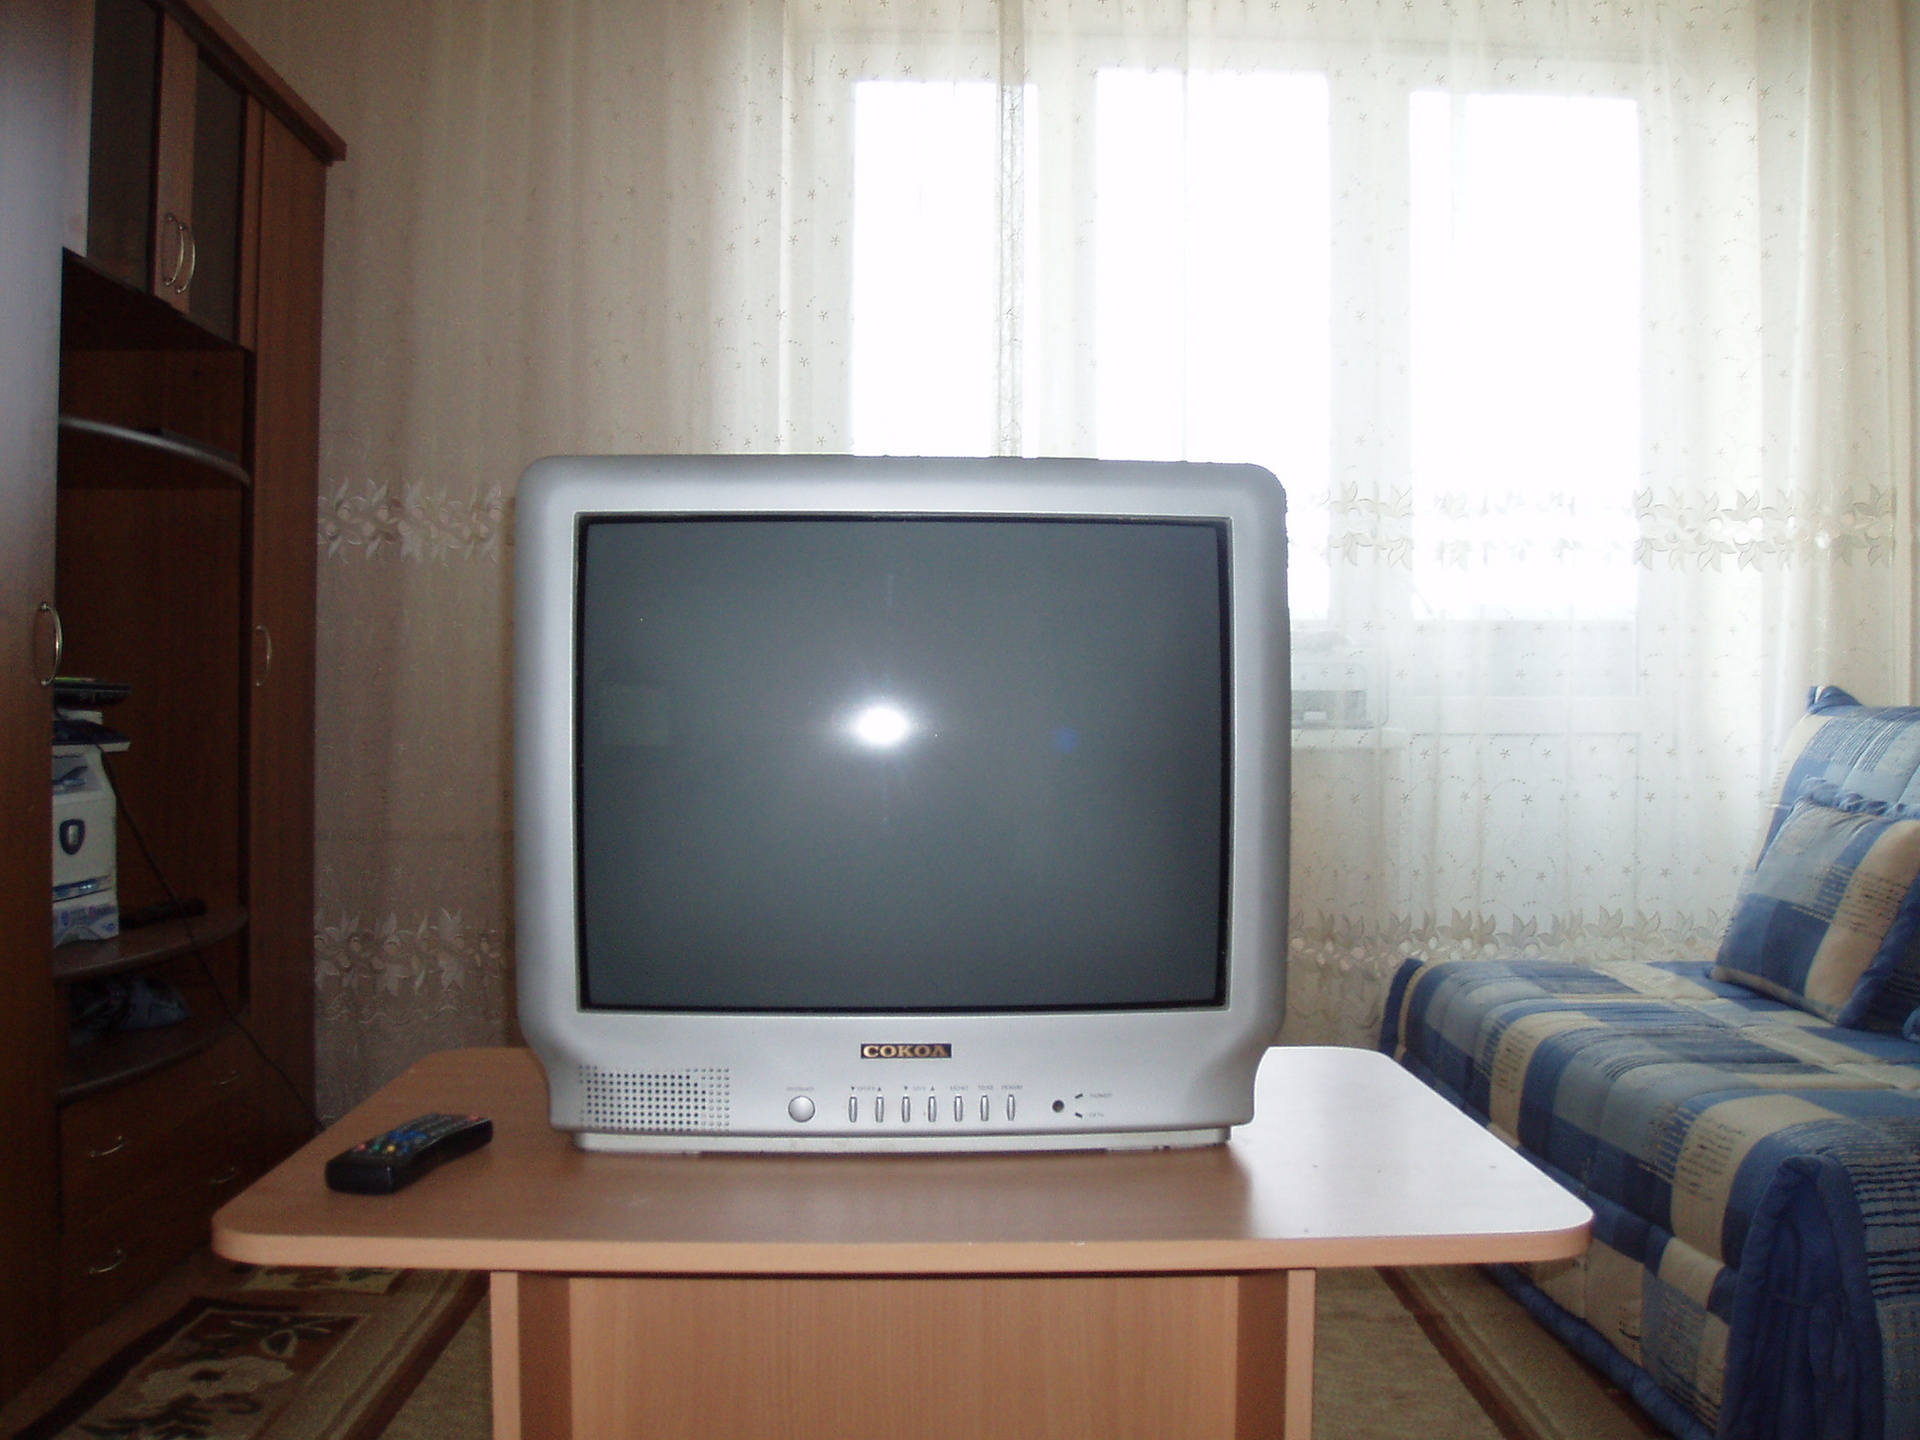 Авито саратов телевизоры купить. Бэушные телевизоры в Оренбурге. Недорогой телевизор картинки. Телевизор рассвет 307. Олх Актау телевизоры б у недорого.